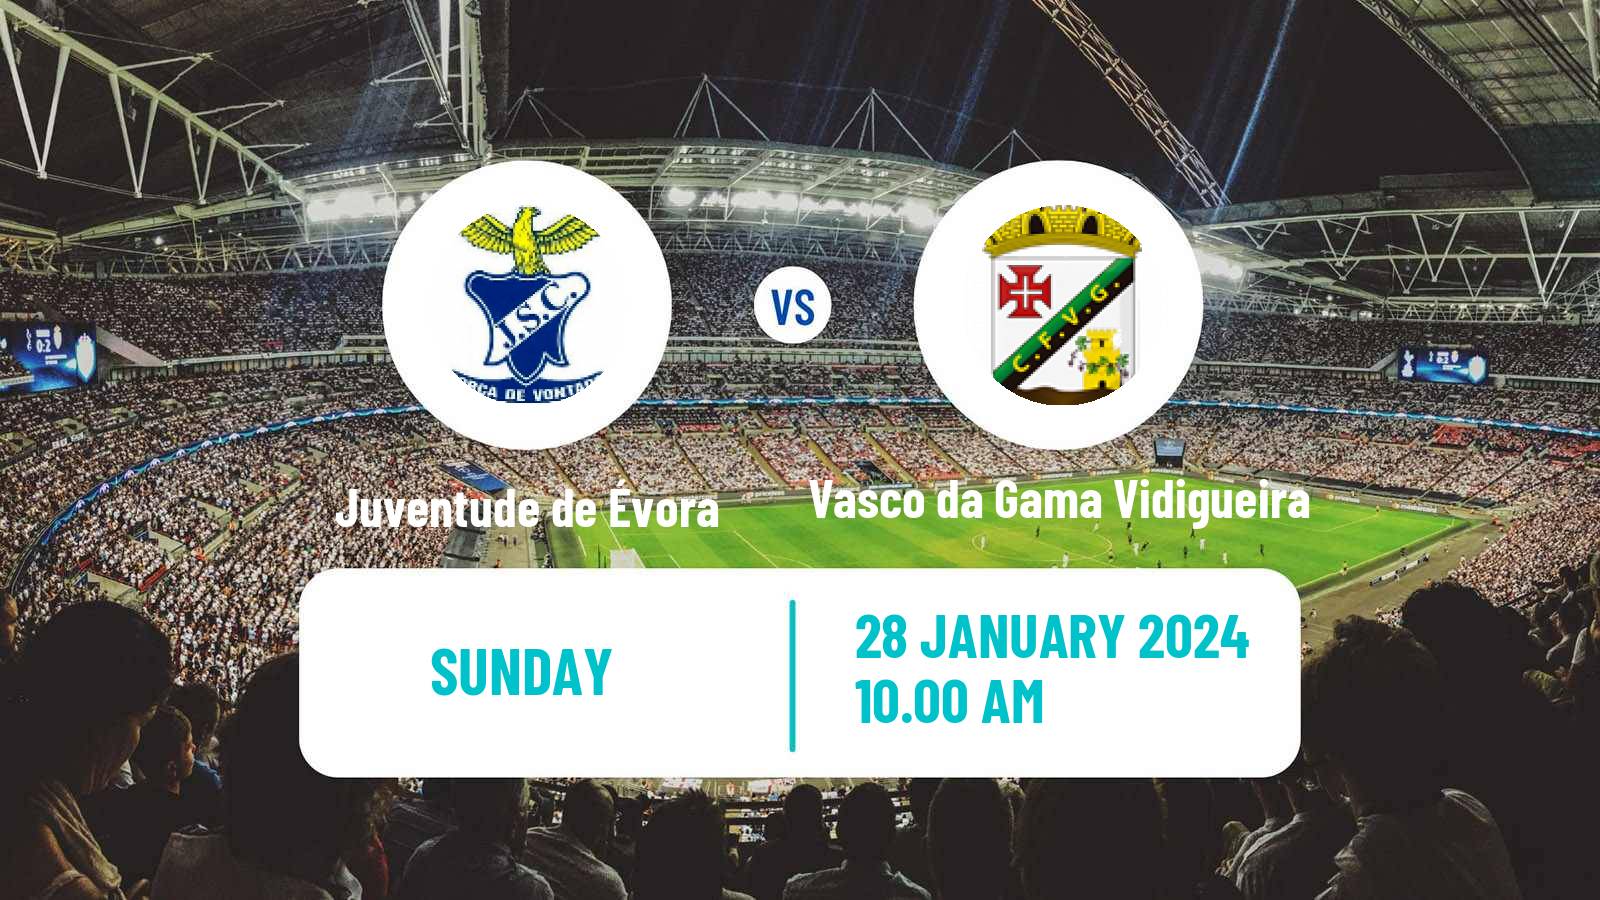 Soccer Campeonato de Portugal - Group D Juventude de Évora - Vasco da Gama Vidigueira